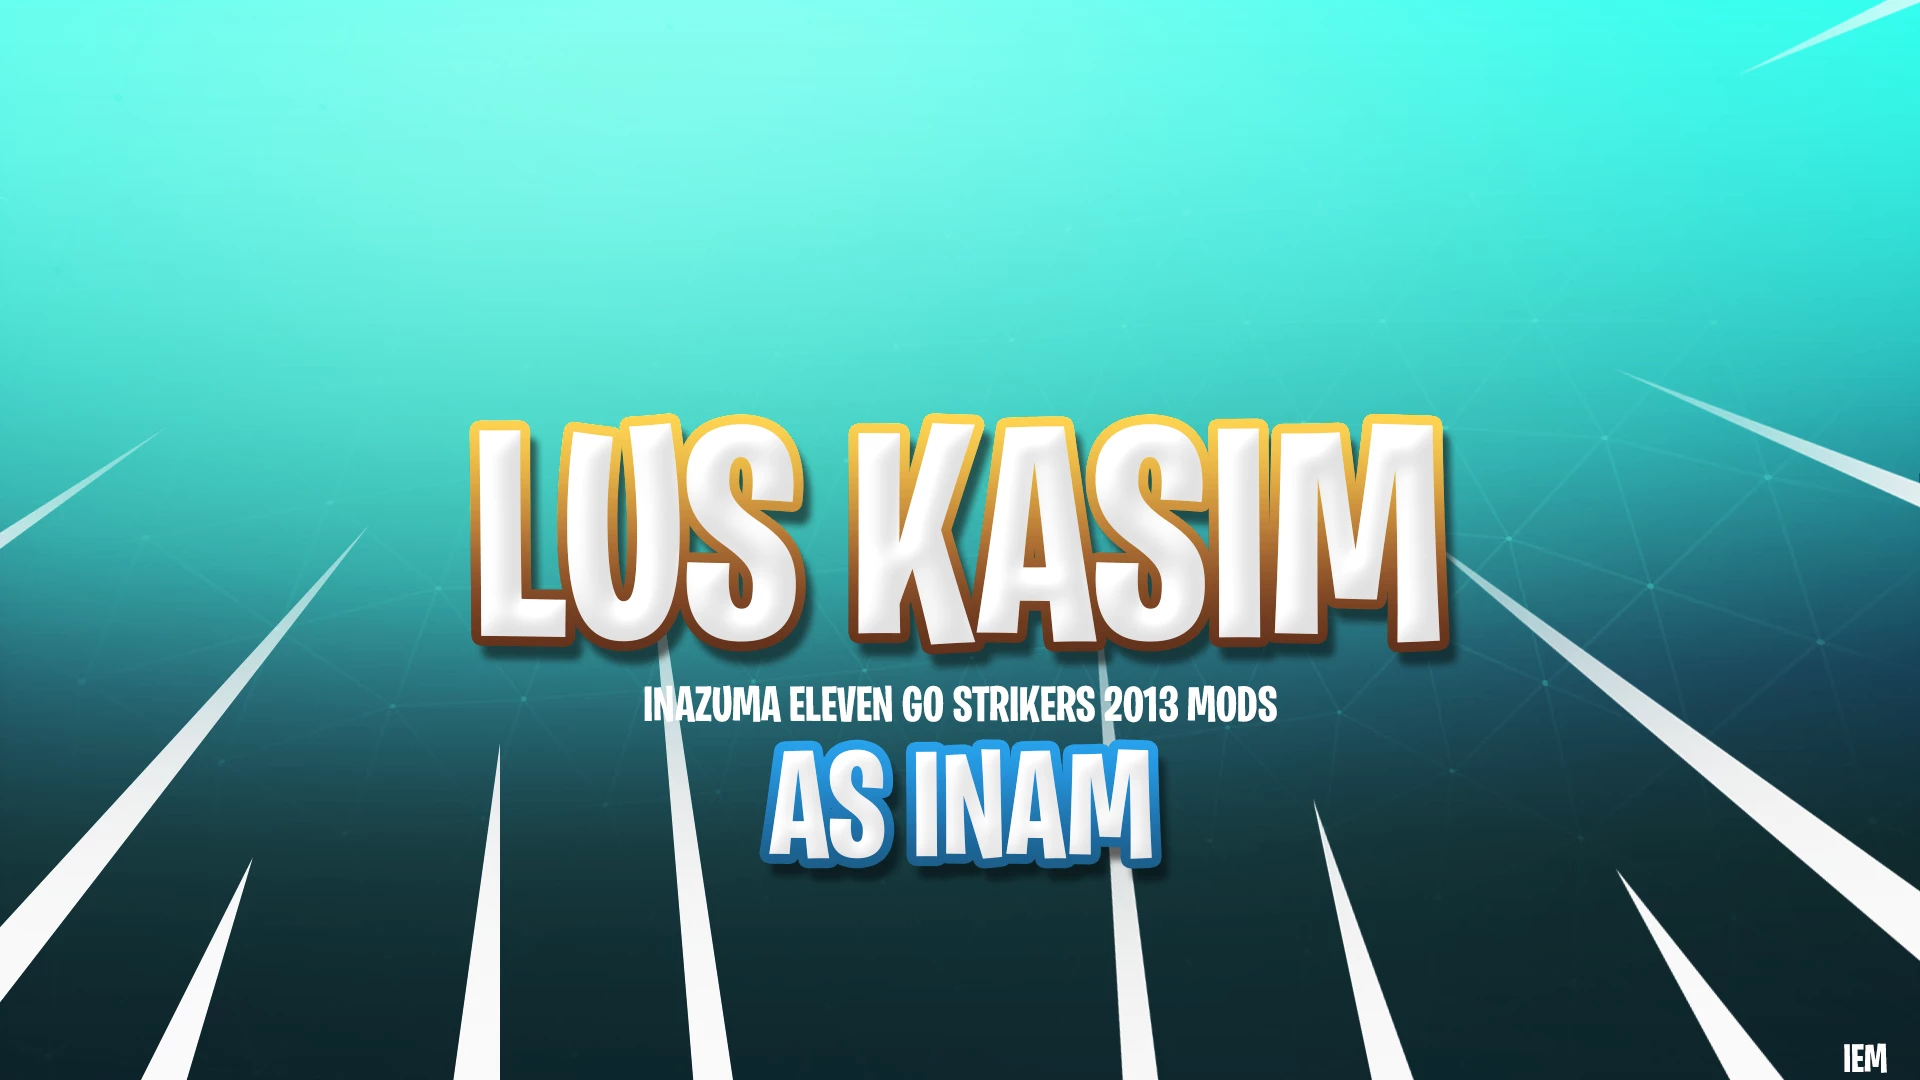 386-lus-kasim-as-inam.png